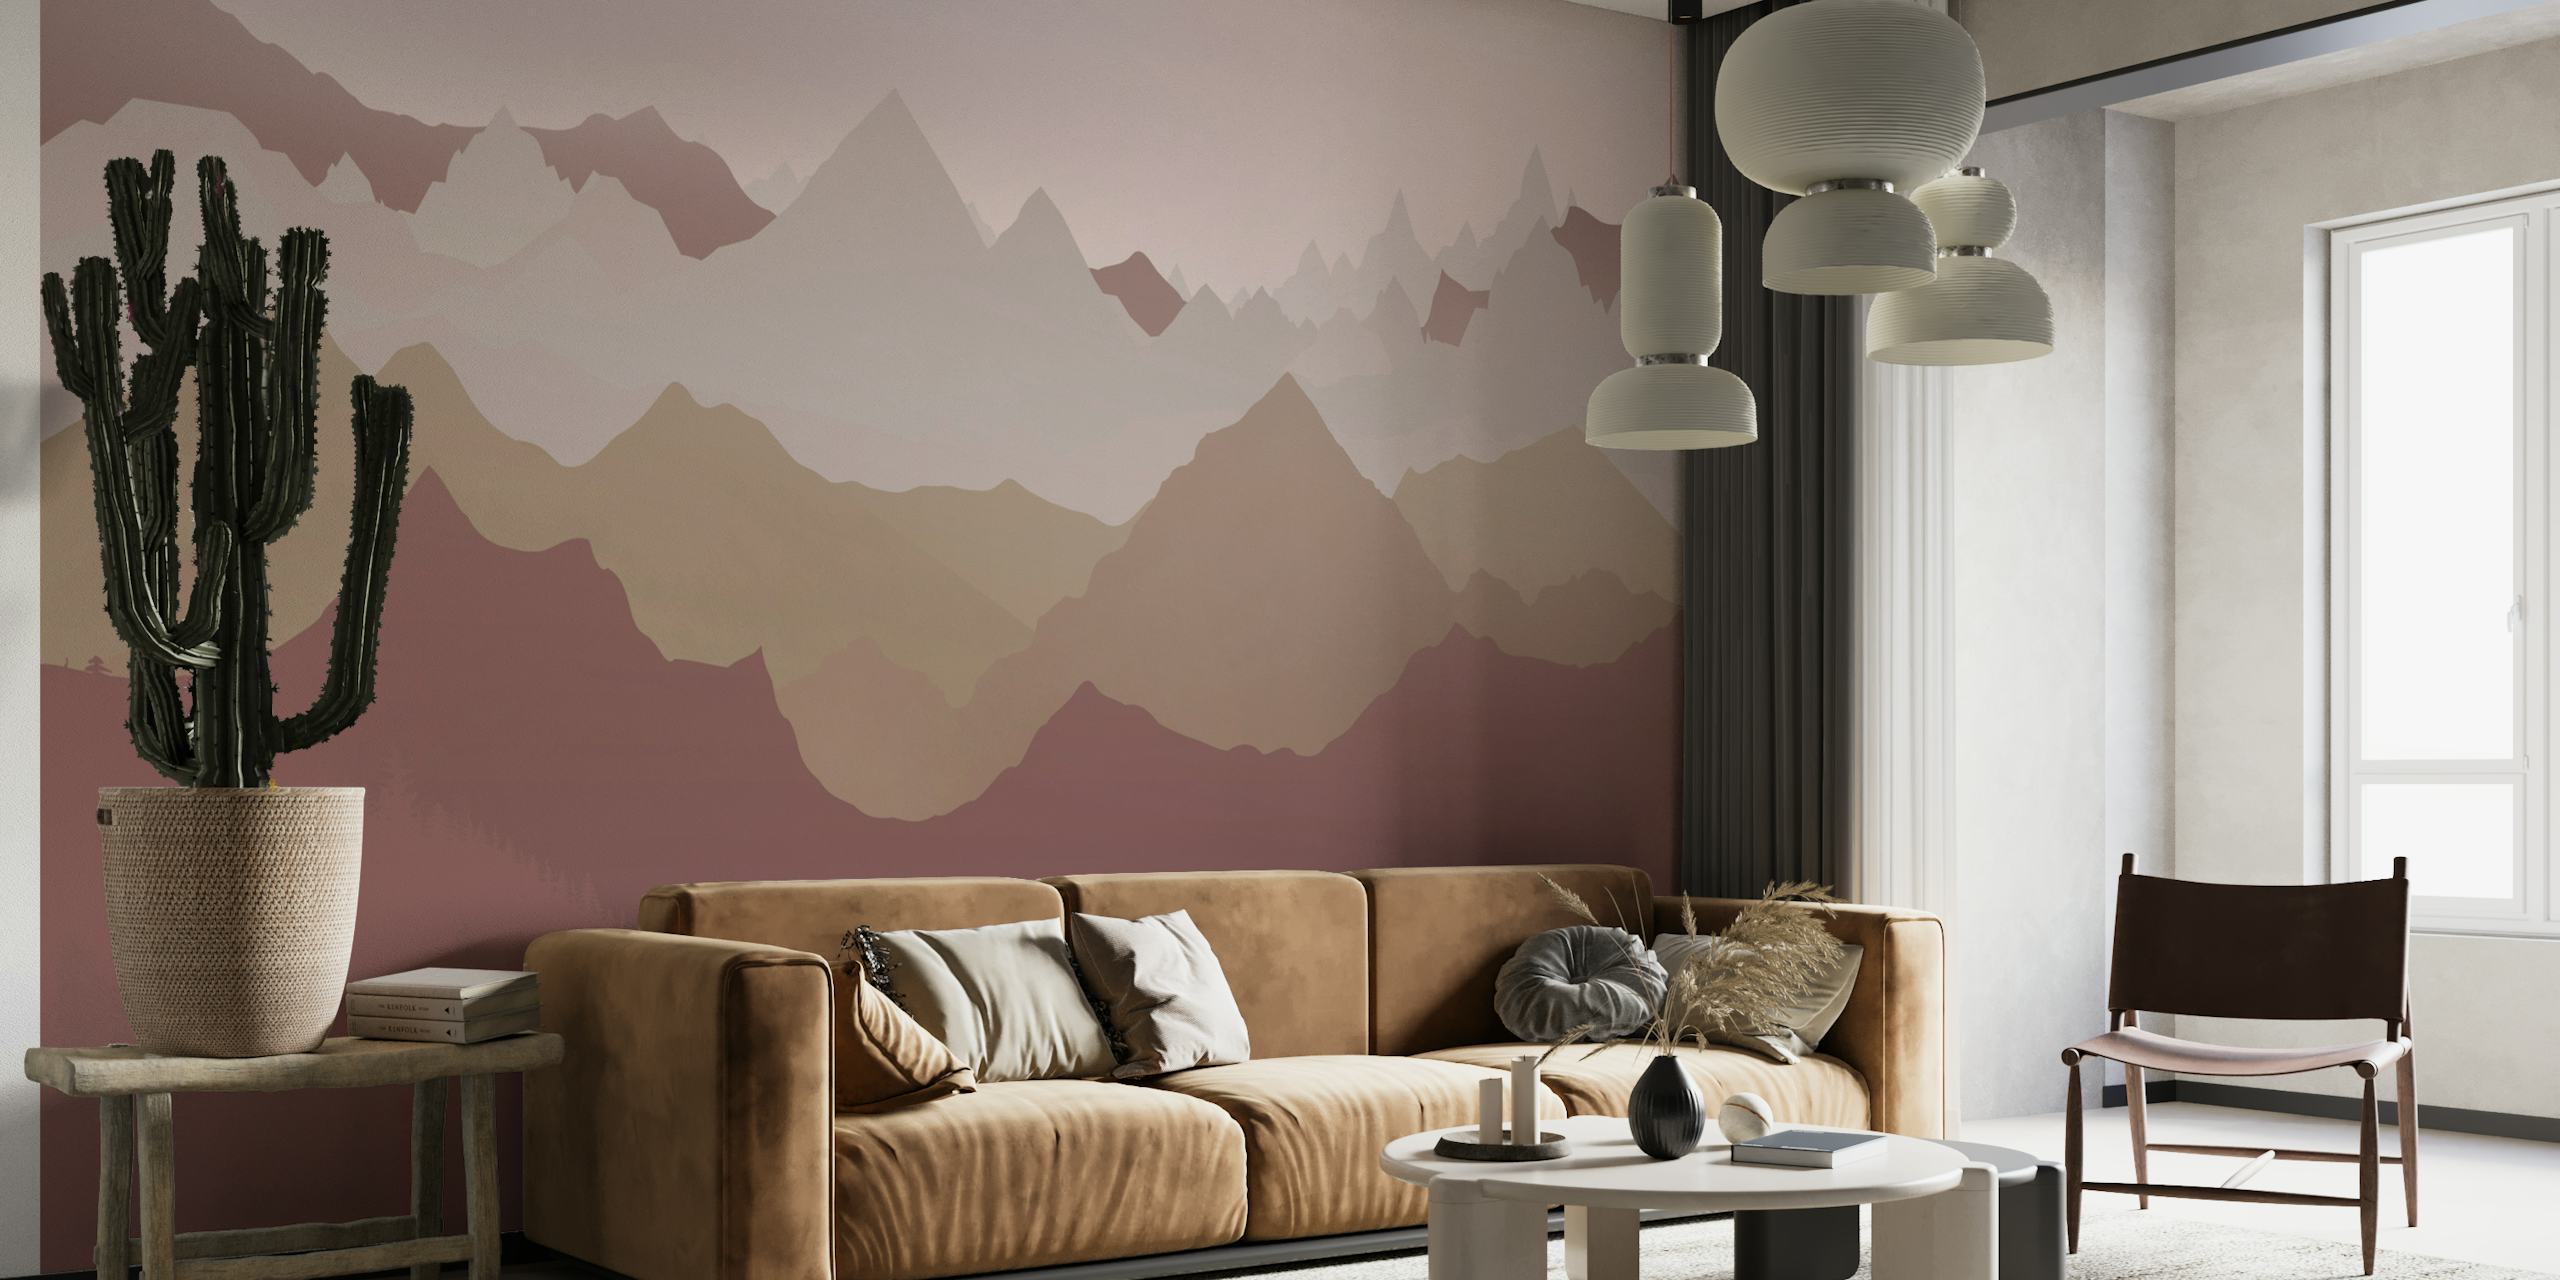 Papier peint stylisé de sommets de montagne ocre et beige sur fond rose poussiéreux